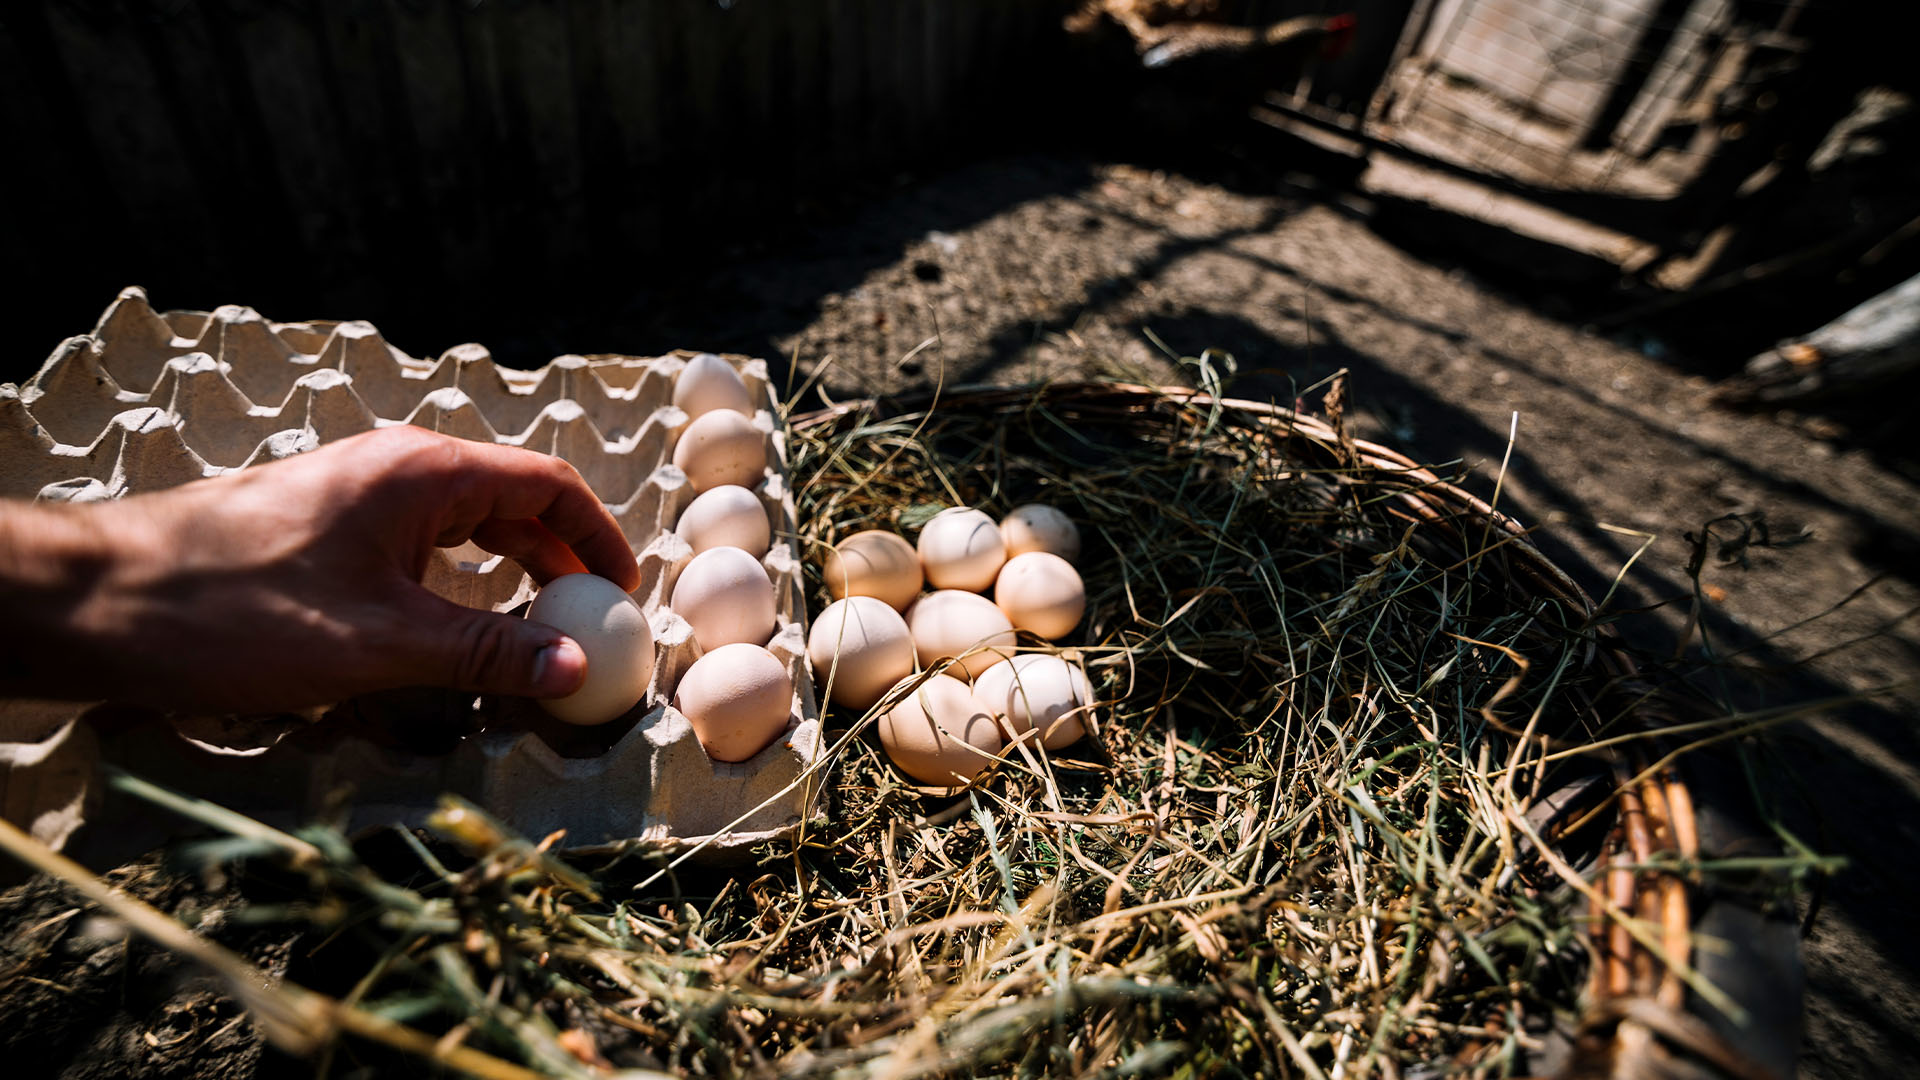 El sector del huevo se queda fuera de las ayudas a sectores agrarios por la guerra de Ucrania